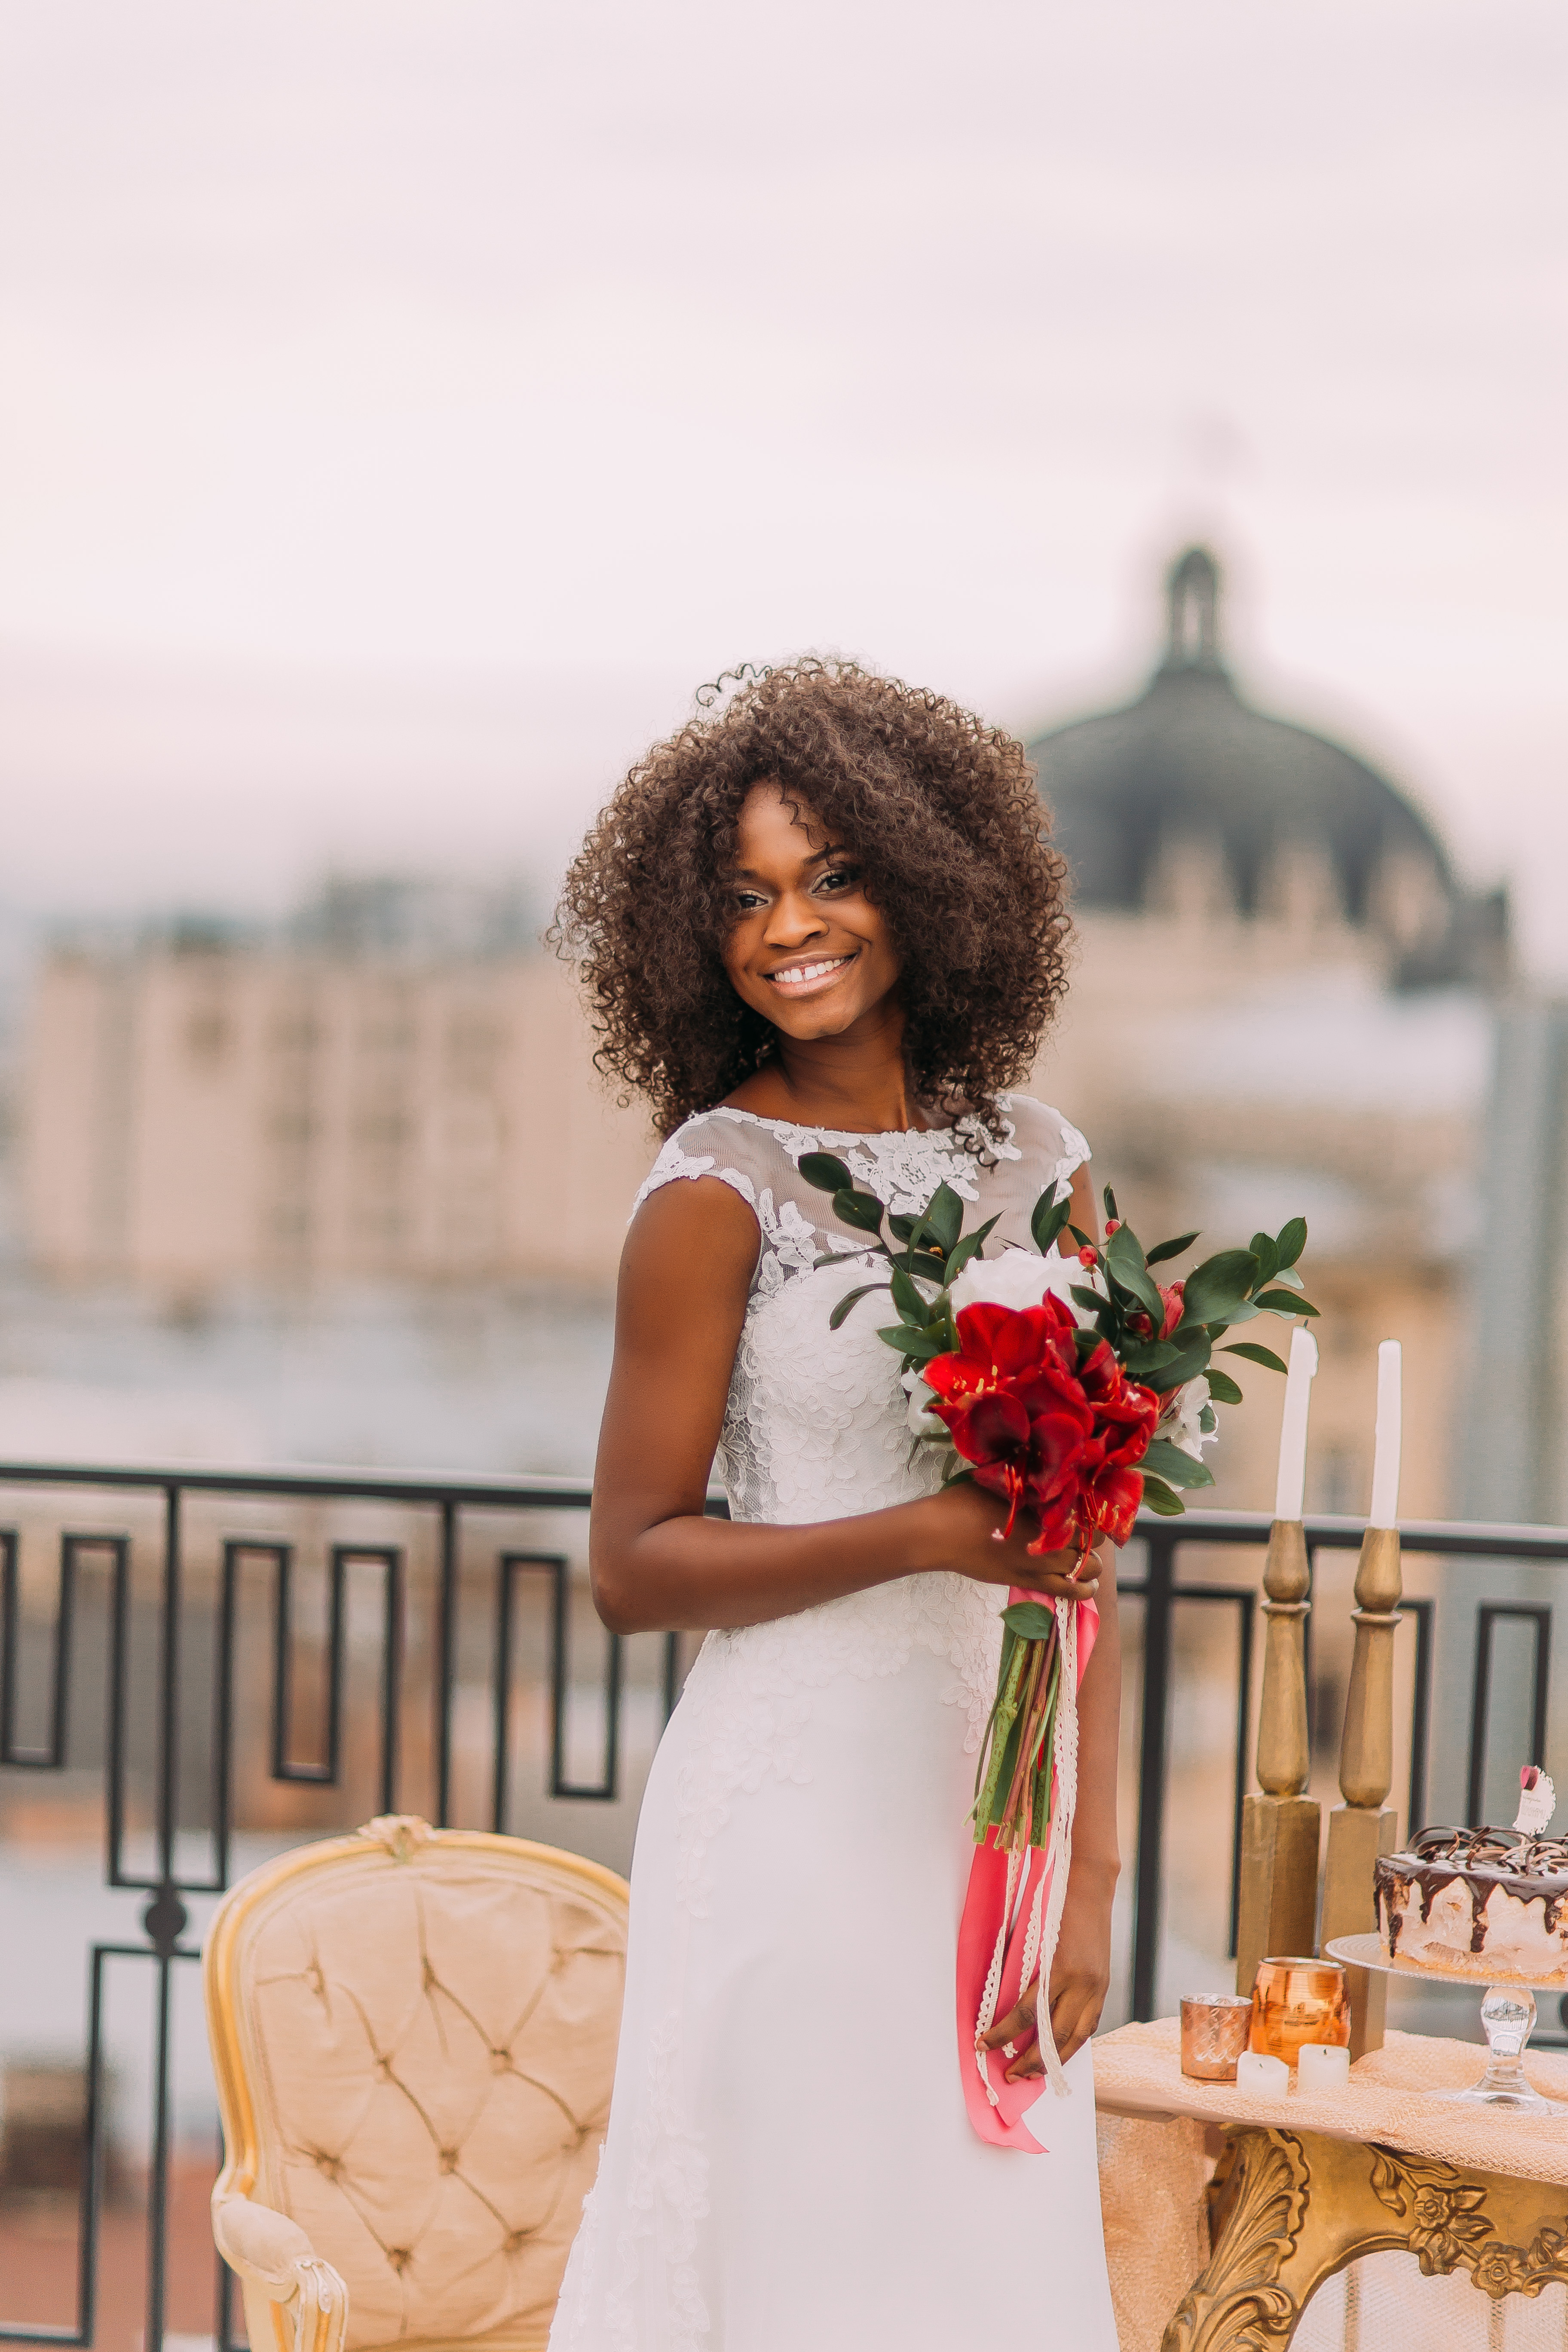 Eine Braut | Quelle: Shutterstock